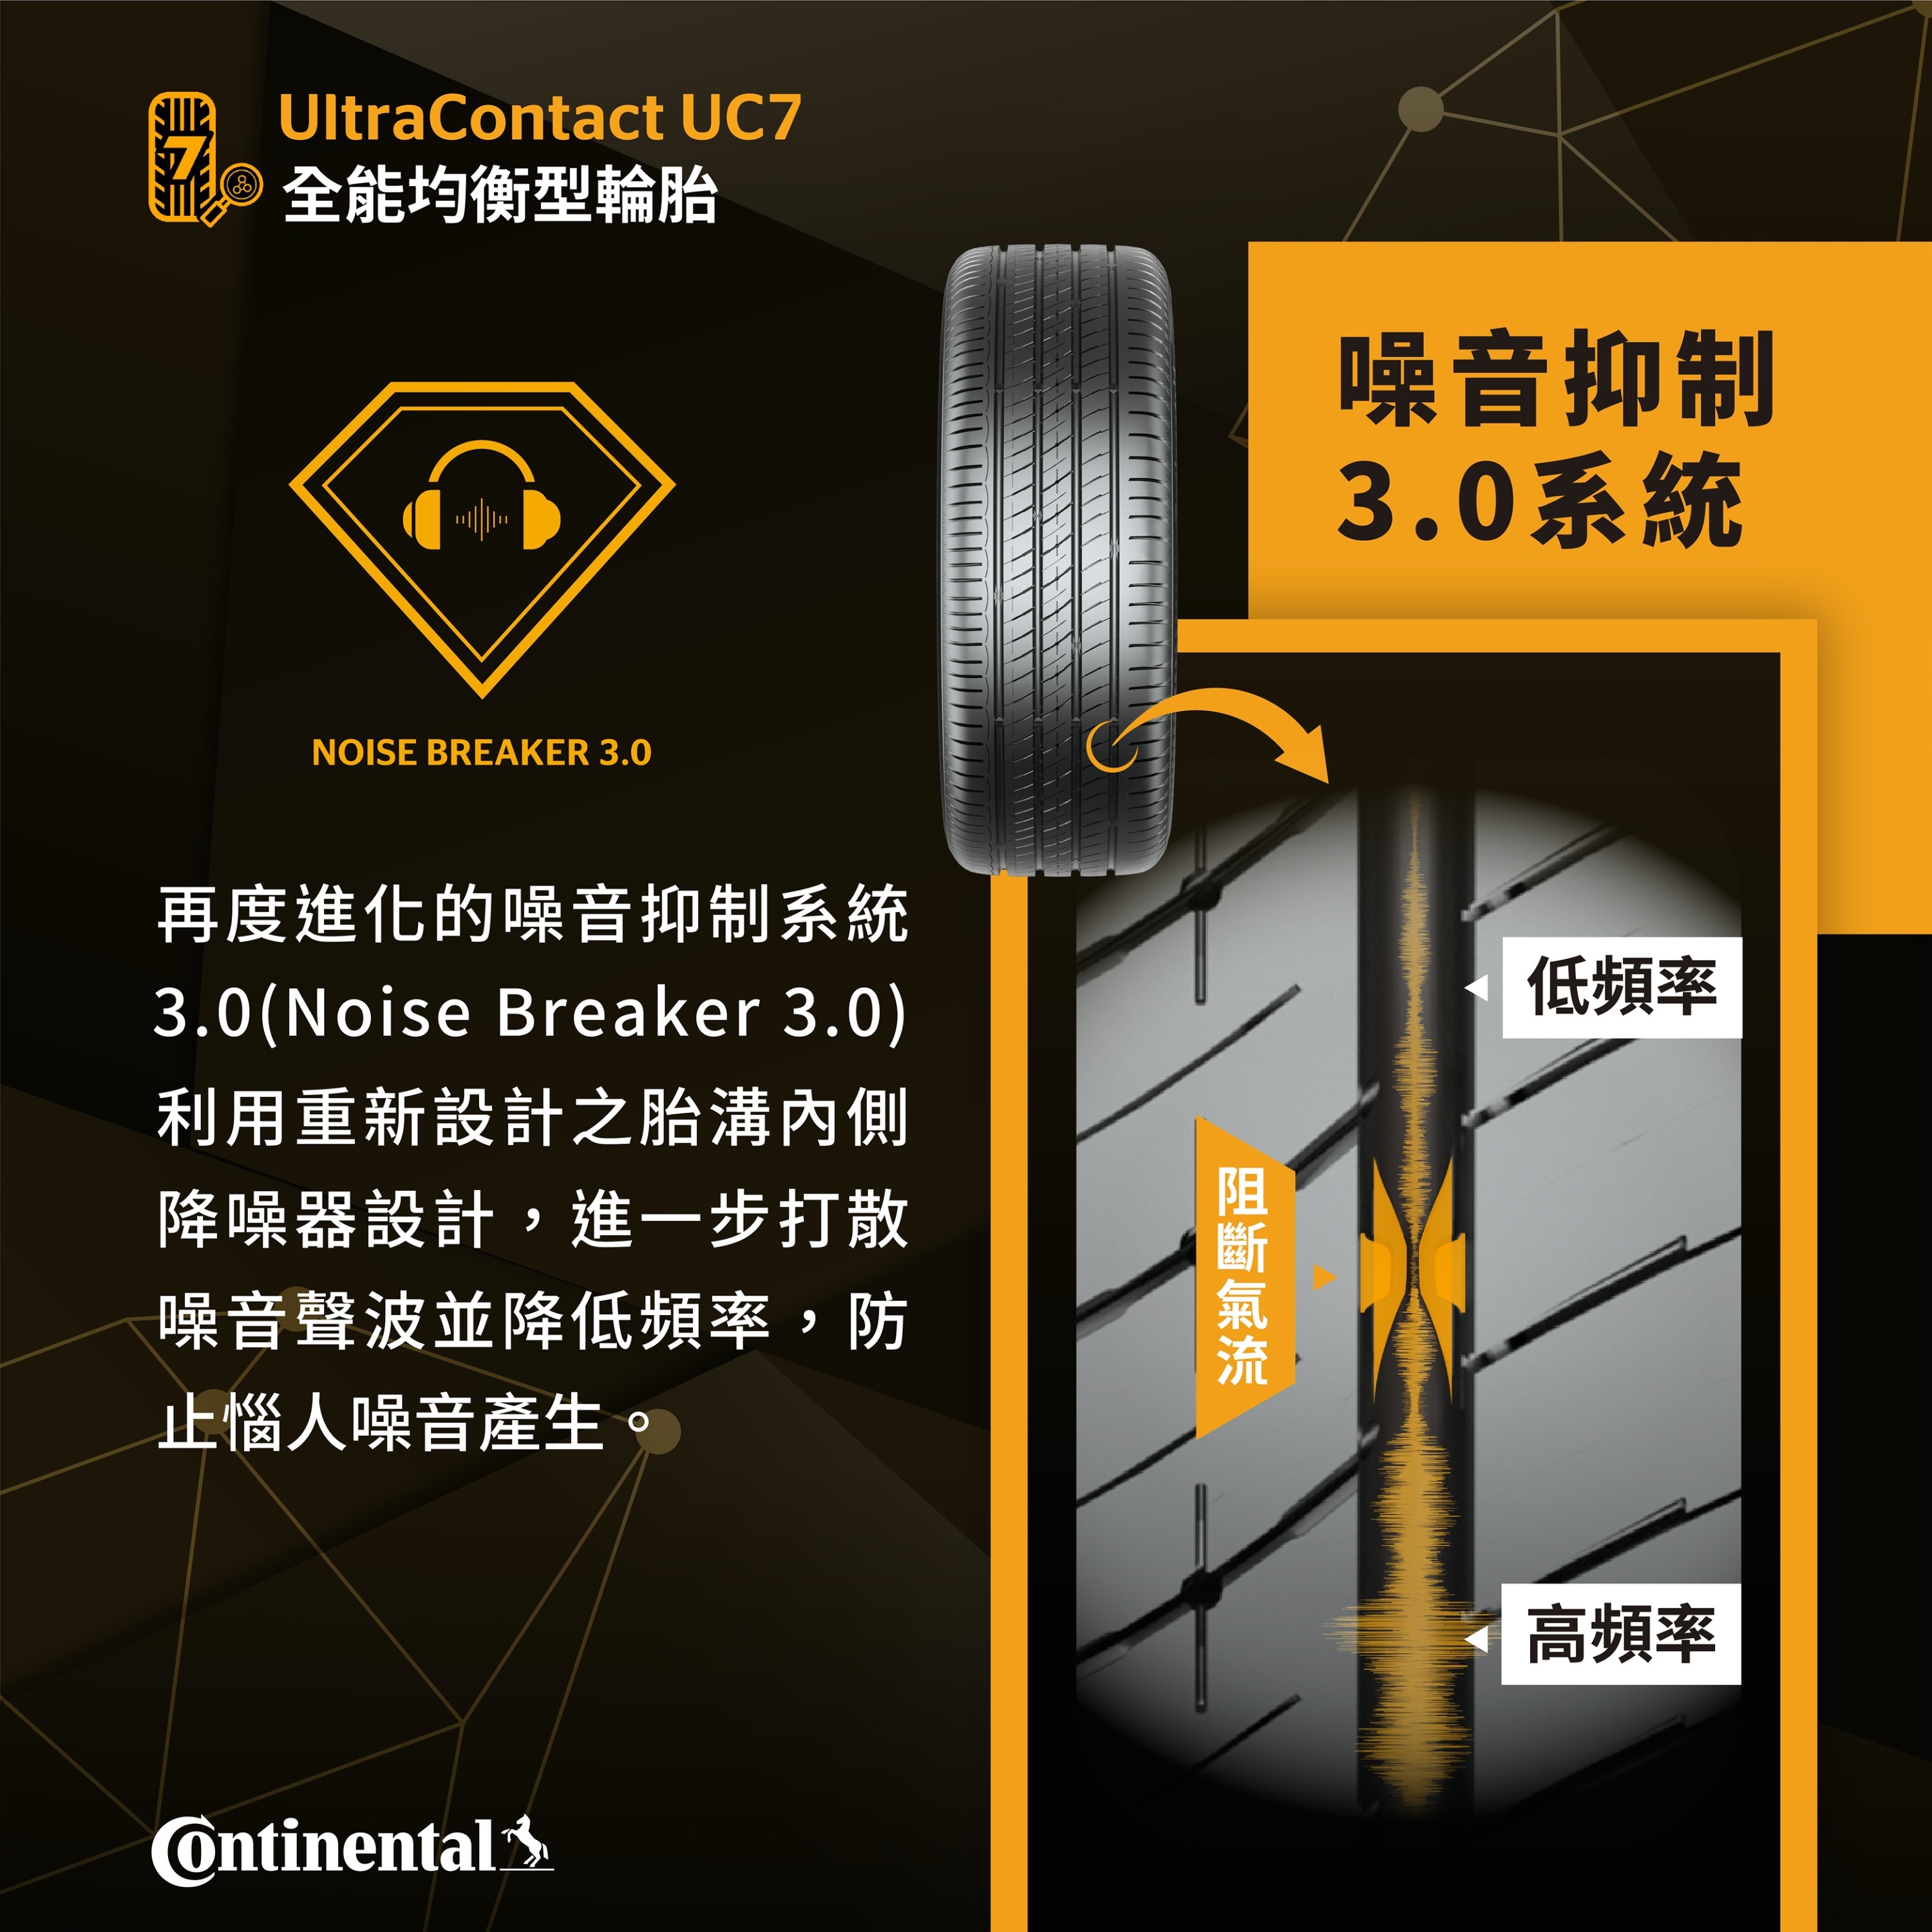 新聞圖四_UltraContact UC7 噪音抑制3.0系統（Noise Breaker 3.0）.jpg